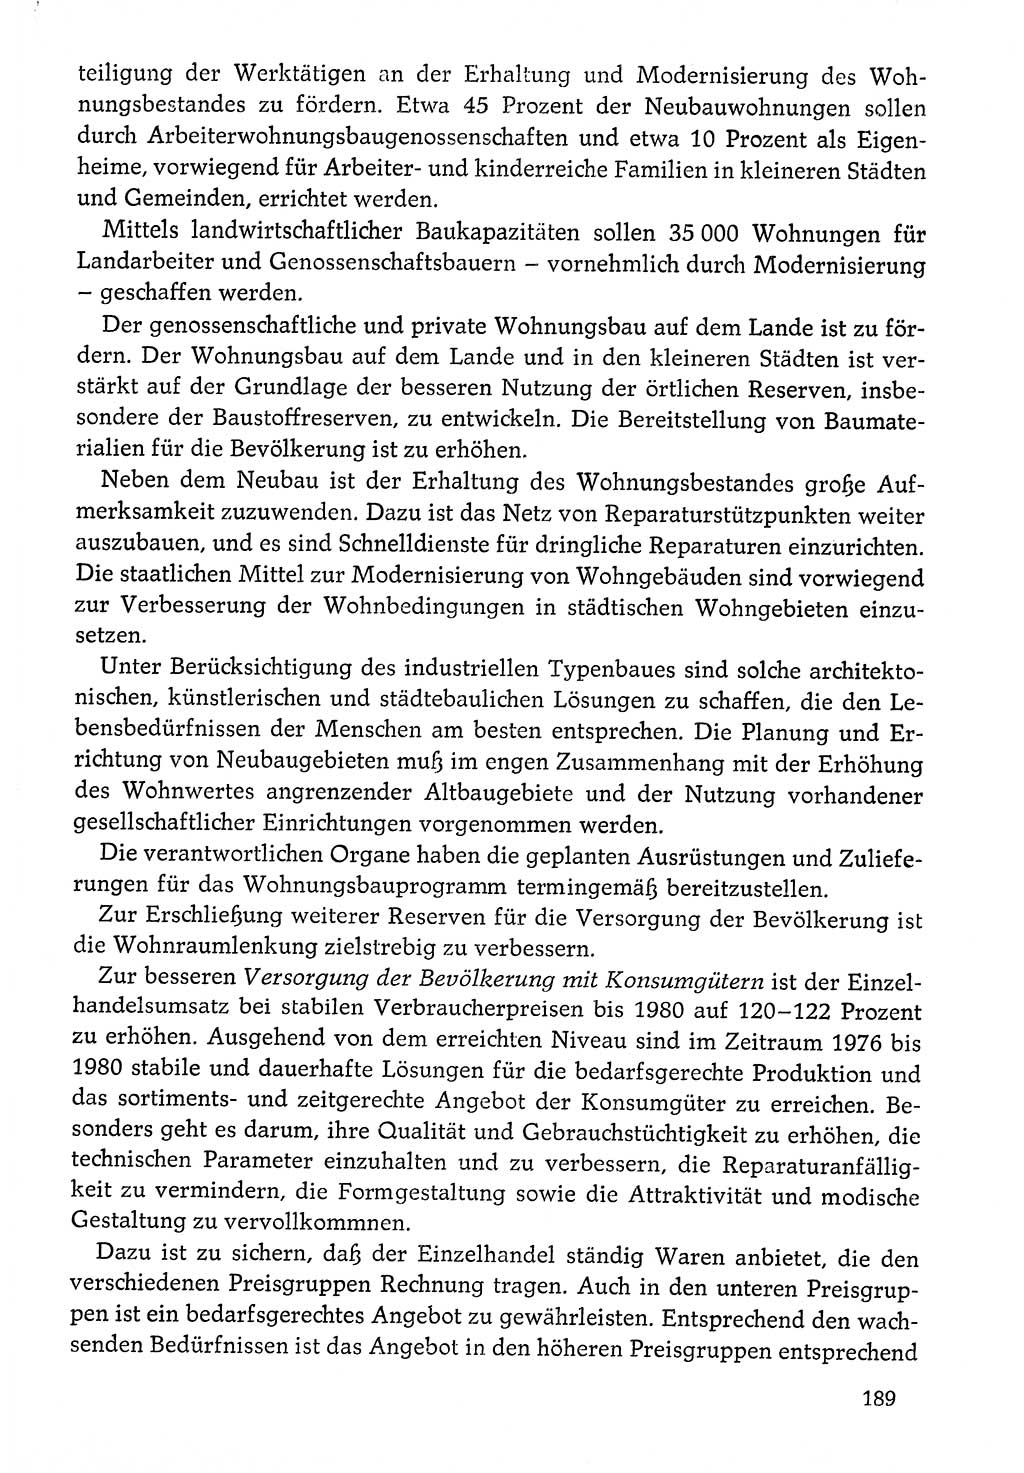 Dokumente der Sozialistischen Einheitspartei Deutschlands (SED) [Deutsche Demokratische Republik (DDR)] 1976-1977, Seite 189 (Dok. SED DDR 1976-1977, S. 189)